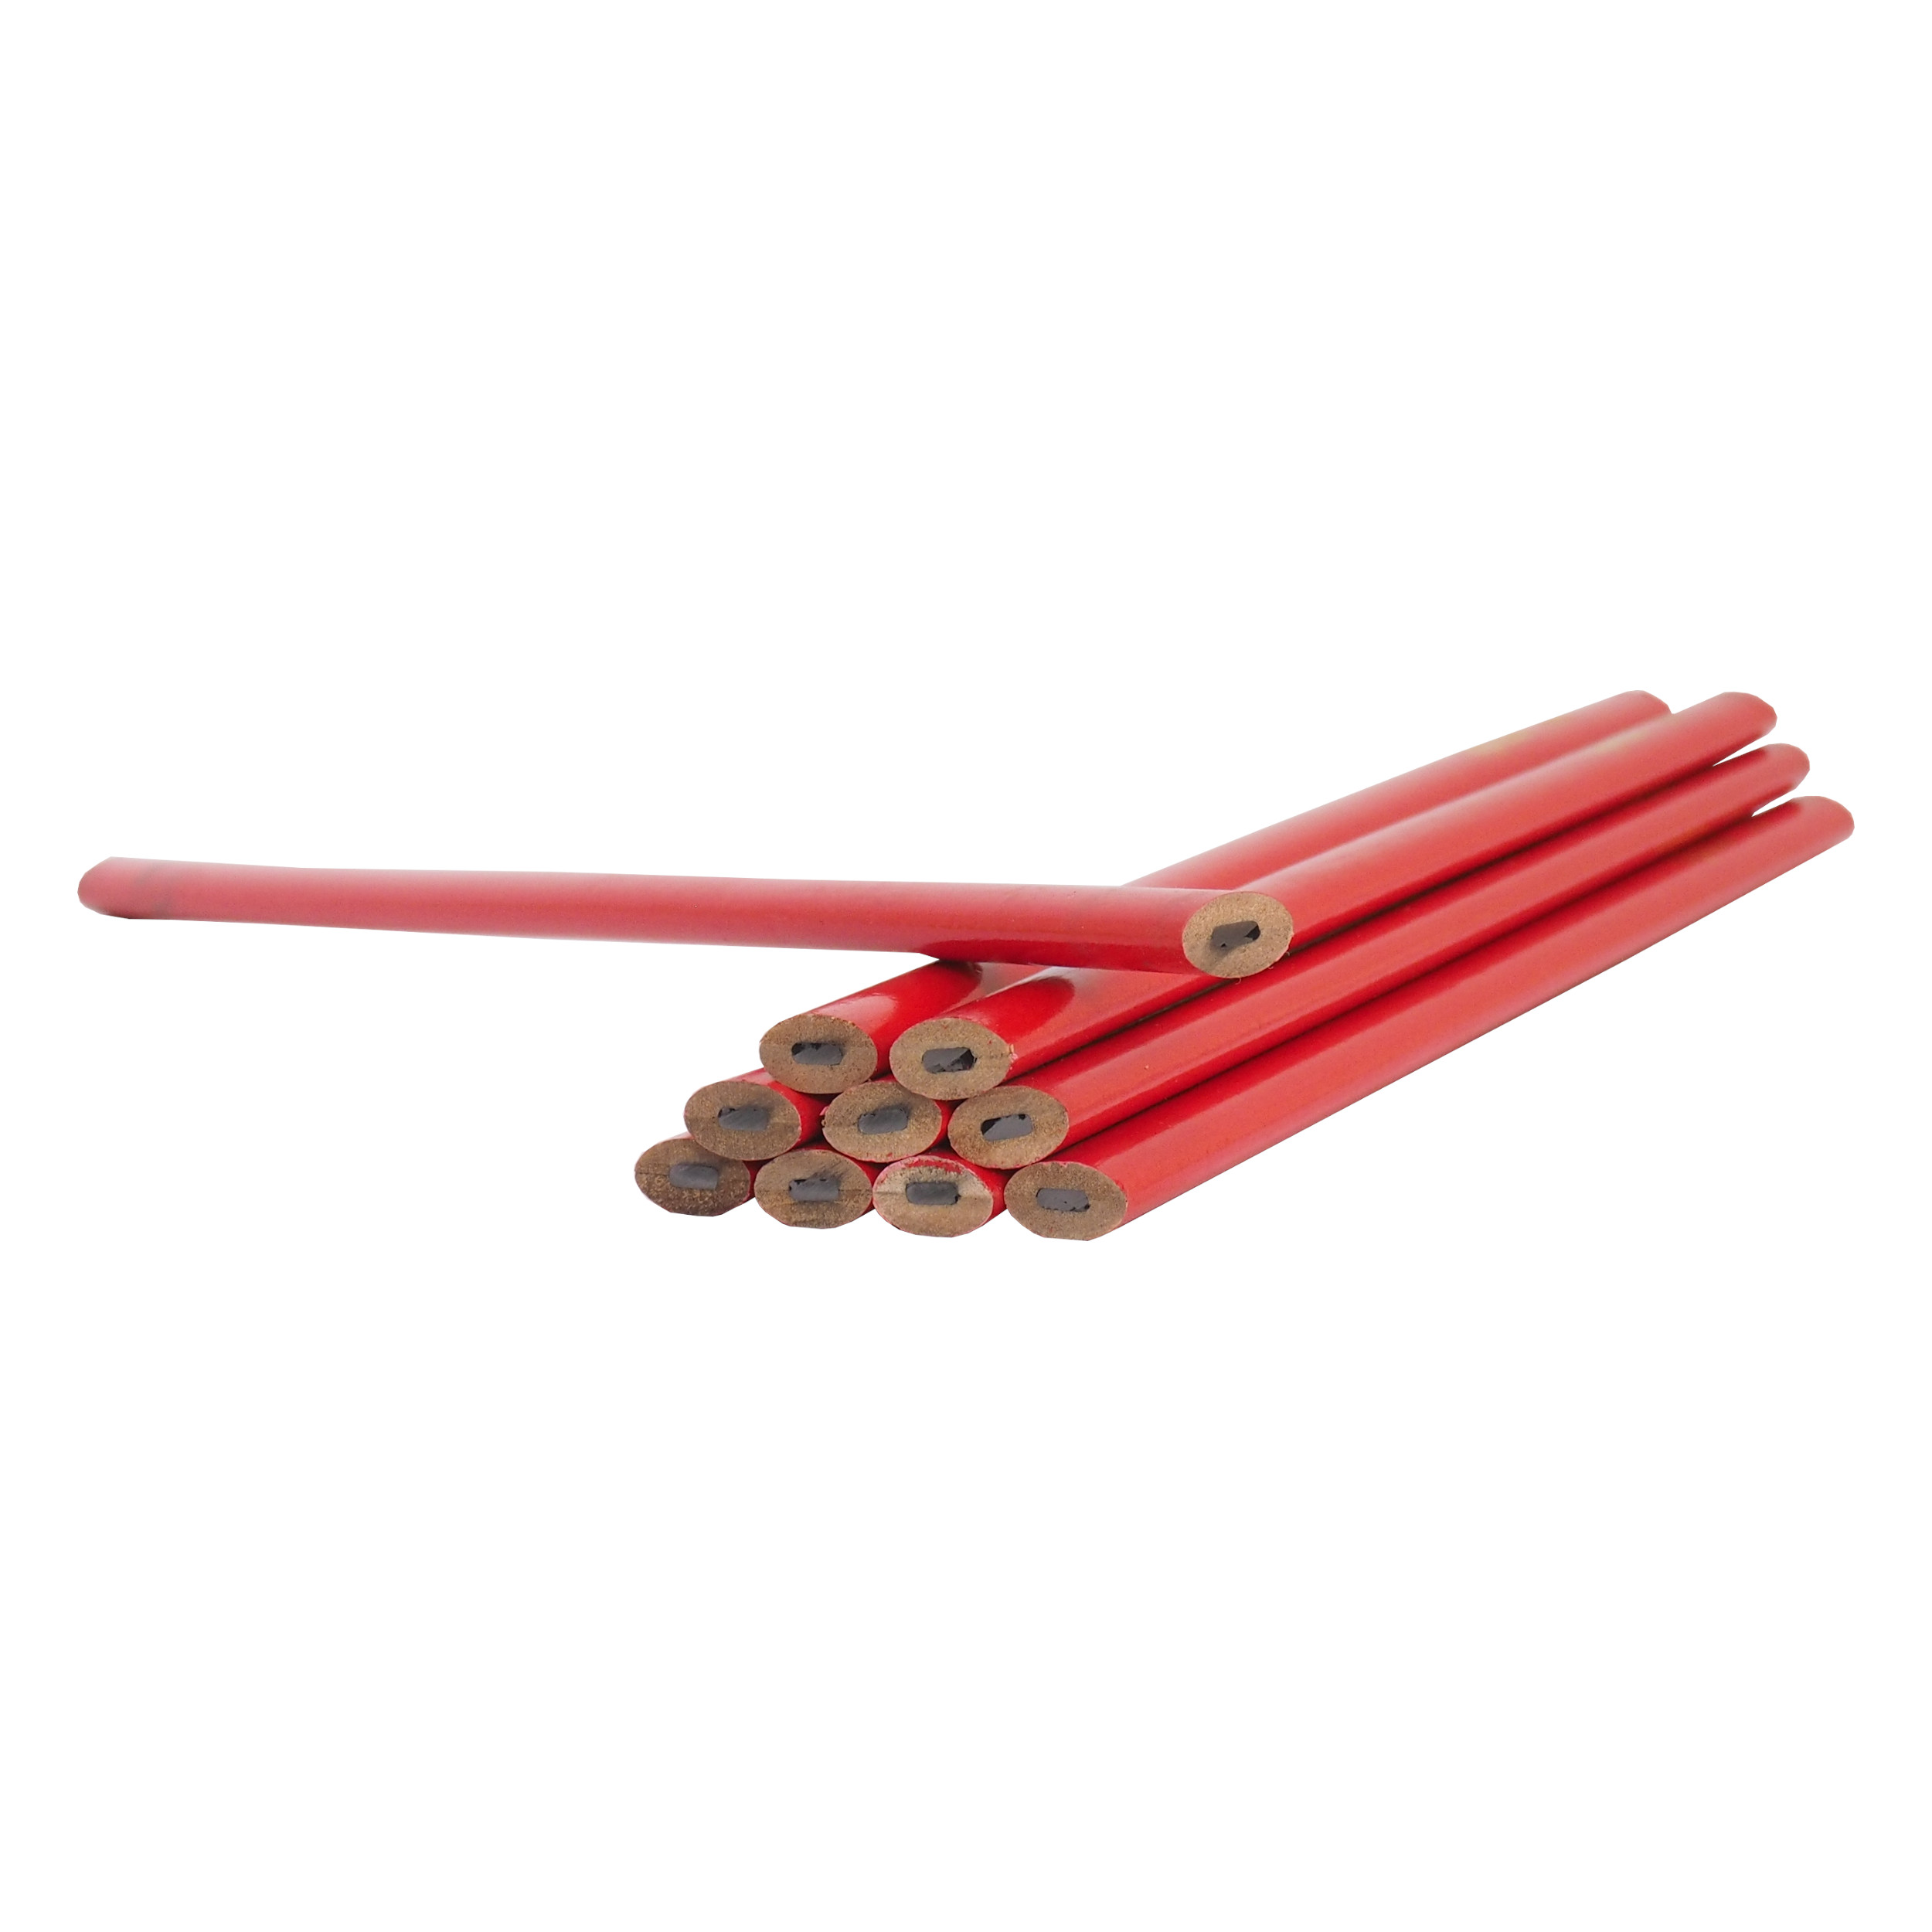 TOPTRADE tužka tesařská, červená, sada 12 ks, 250 mm 0.19 Kg TOP Sklad4 600008 288